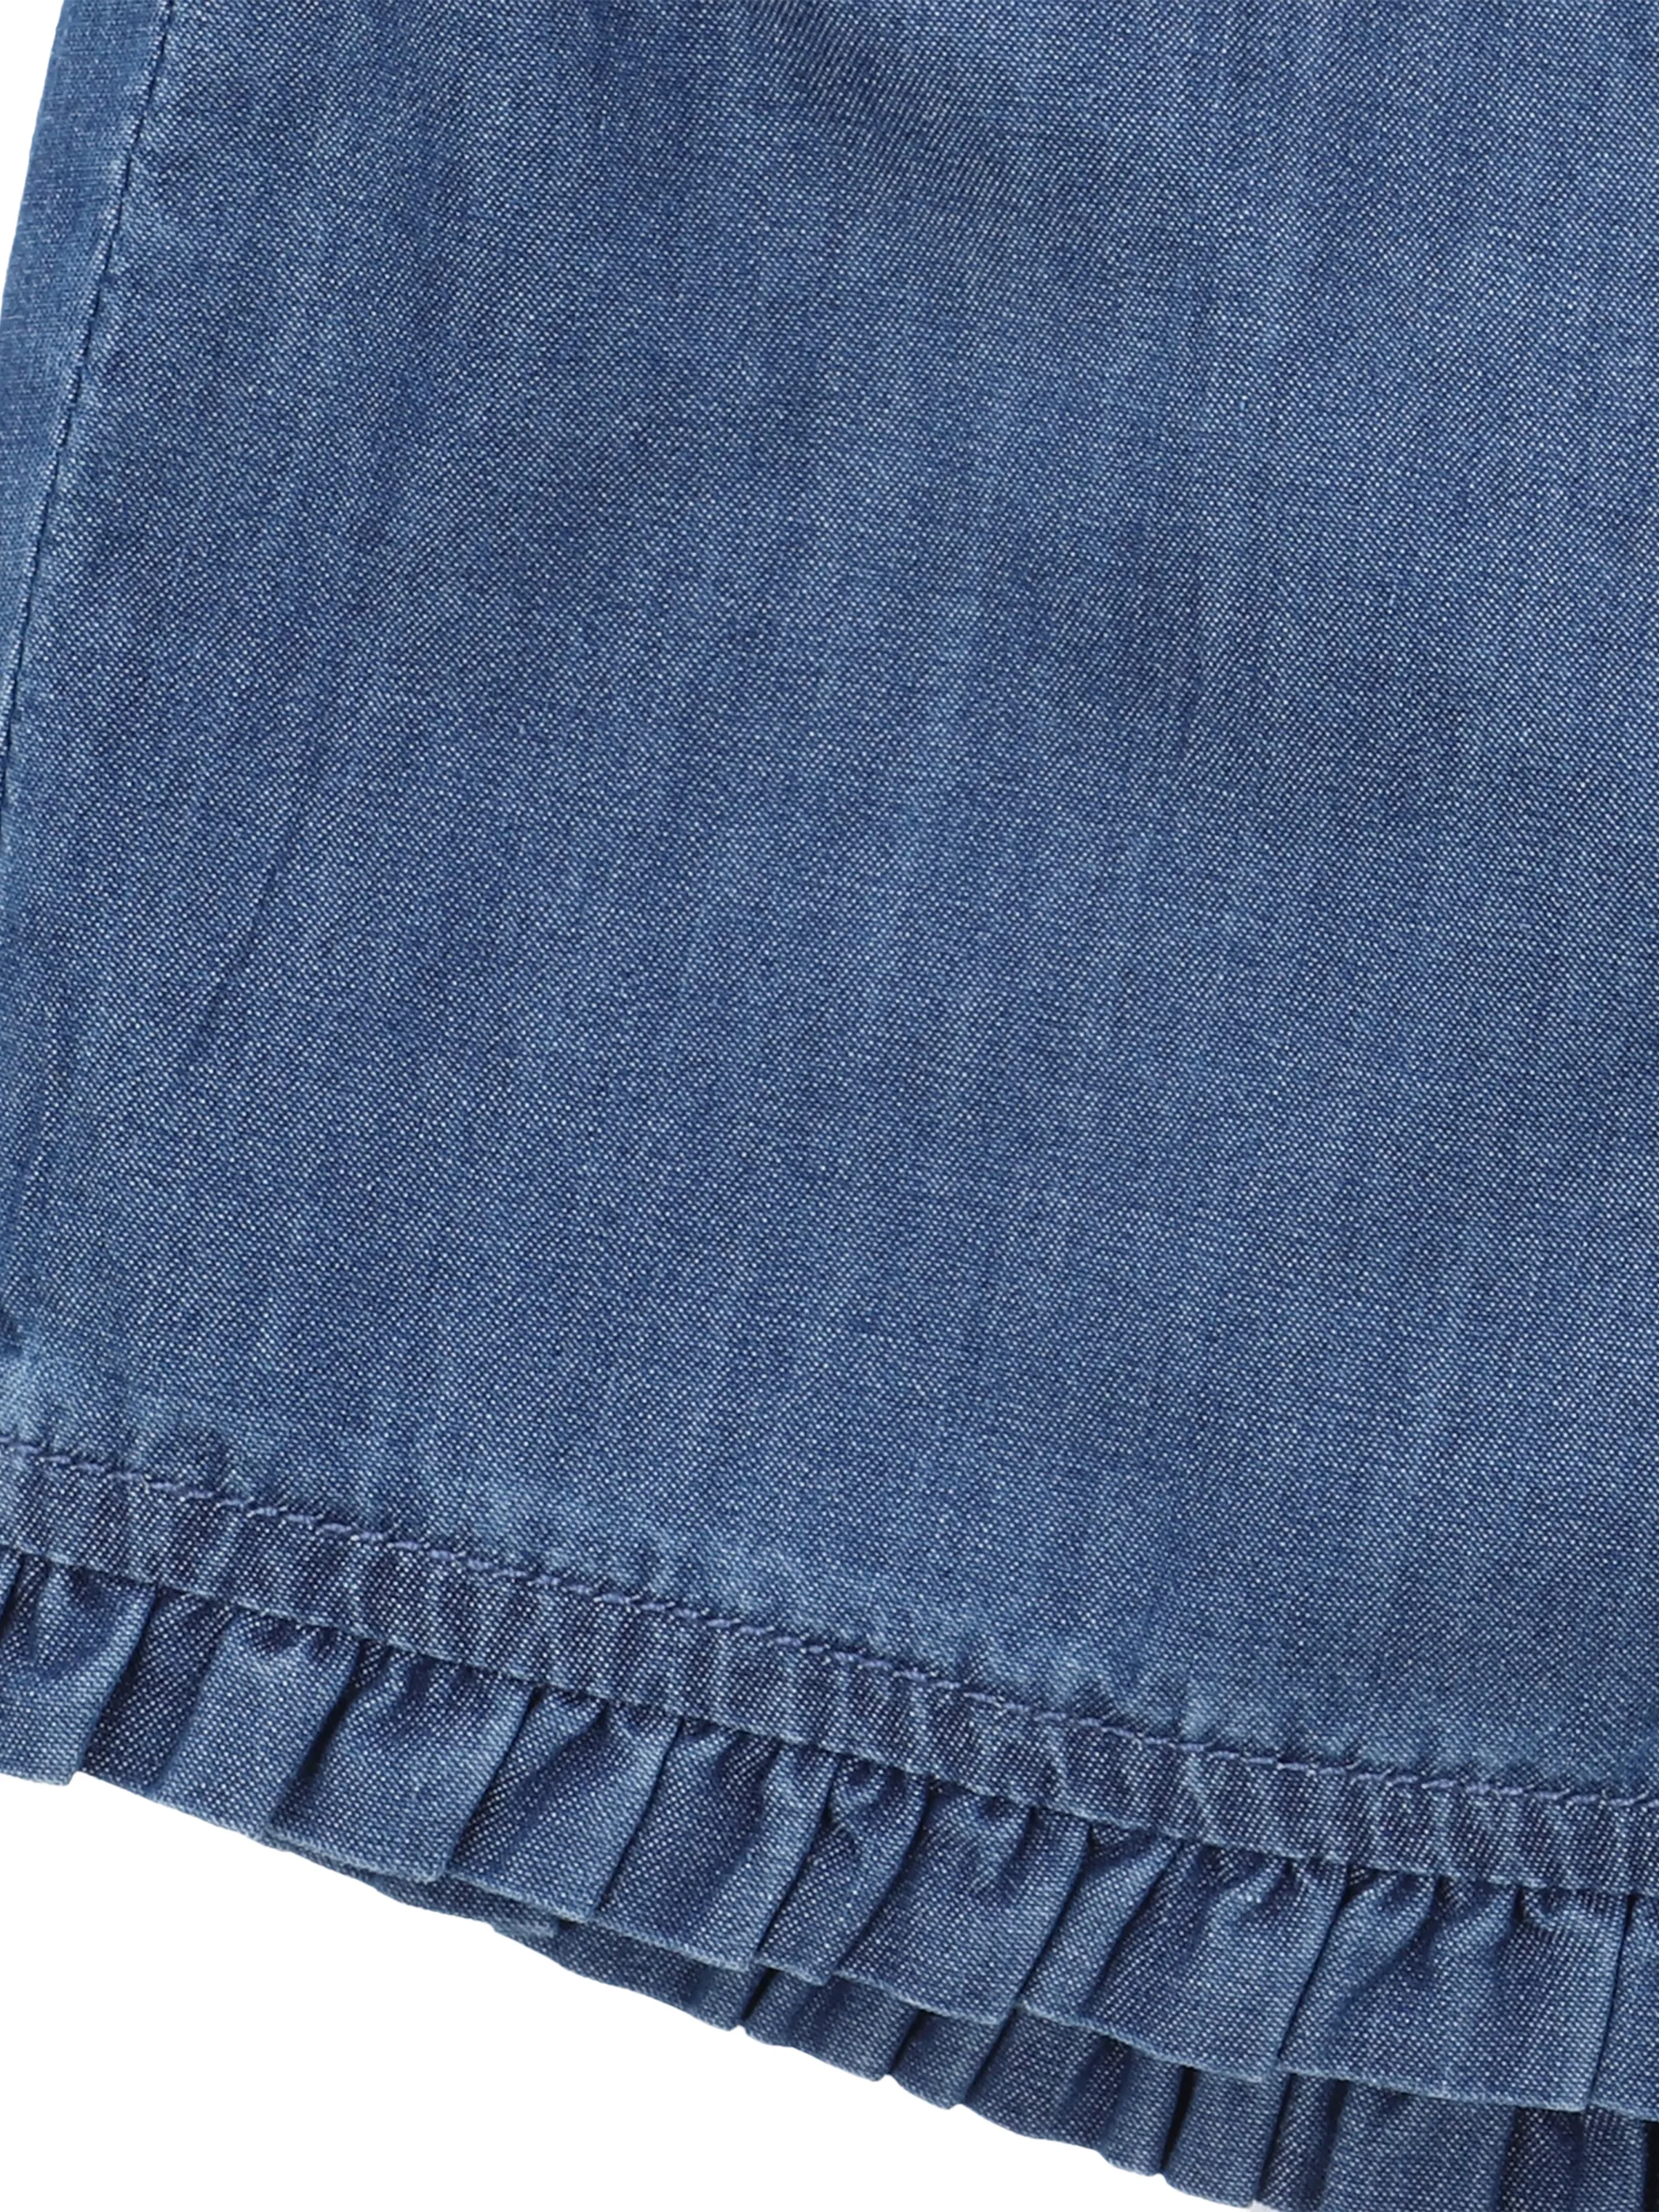 Stop + Go MG Jeans Shorts in hellem Blau 862788 HELLBLAU 3